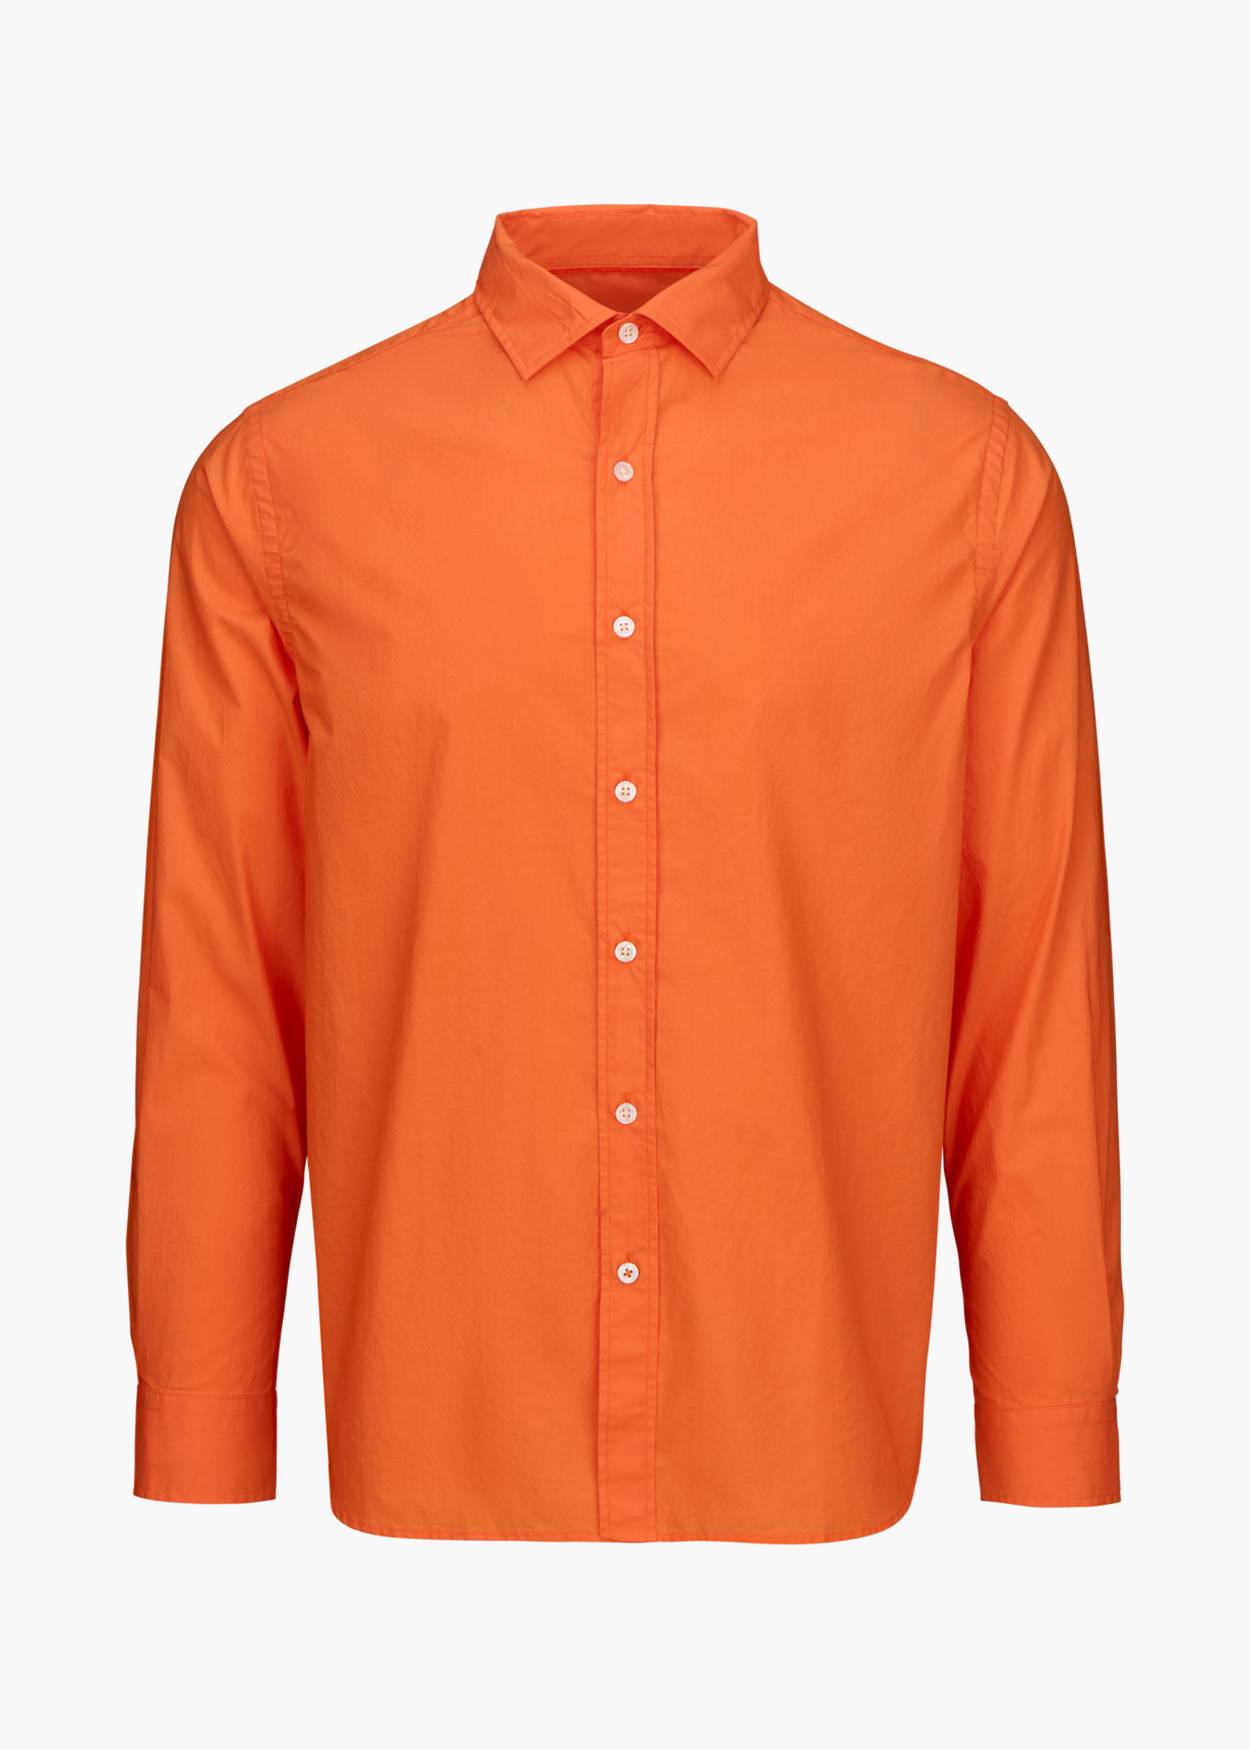 Malfa Garment Dye Shirt